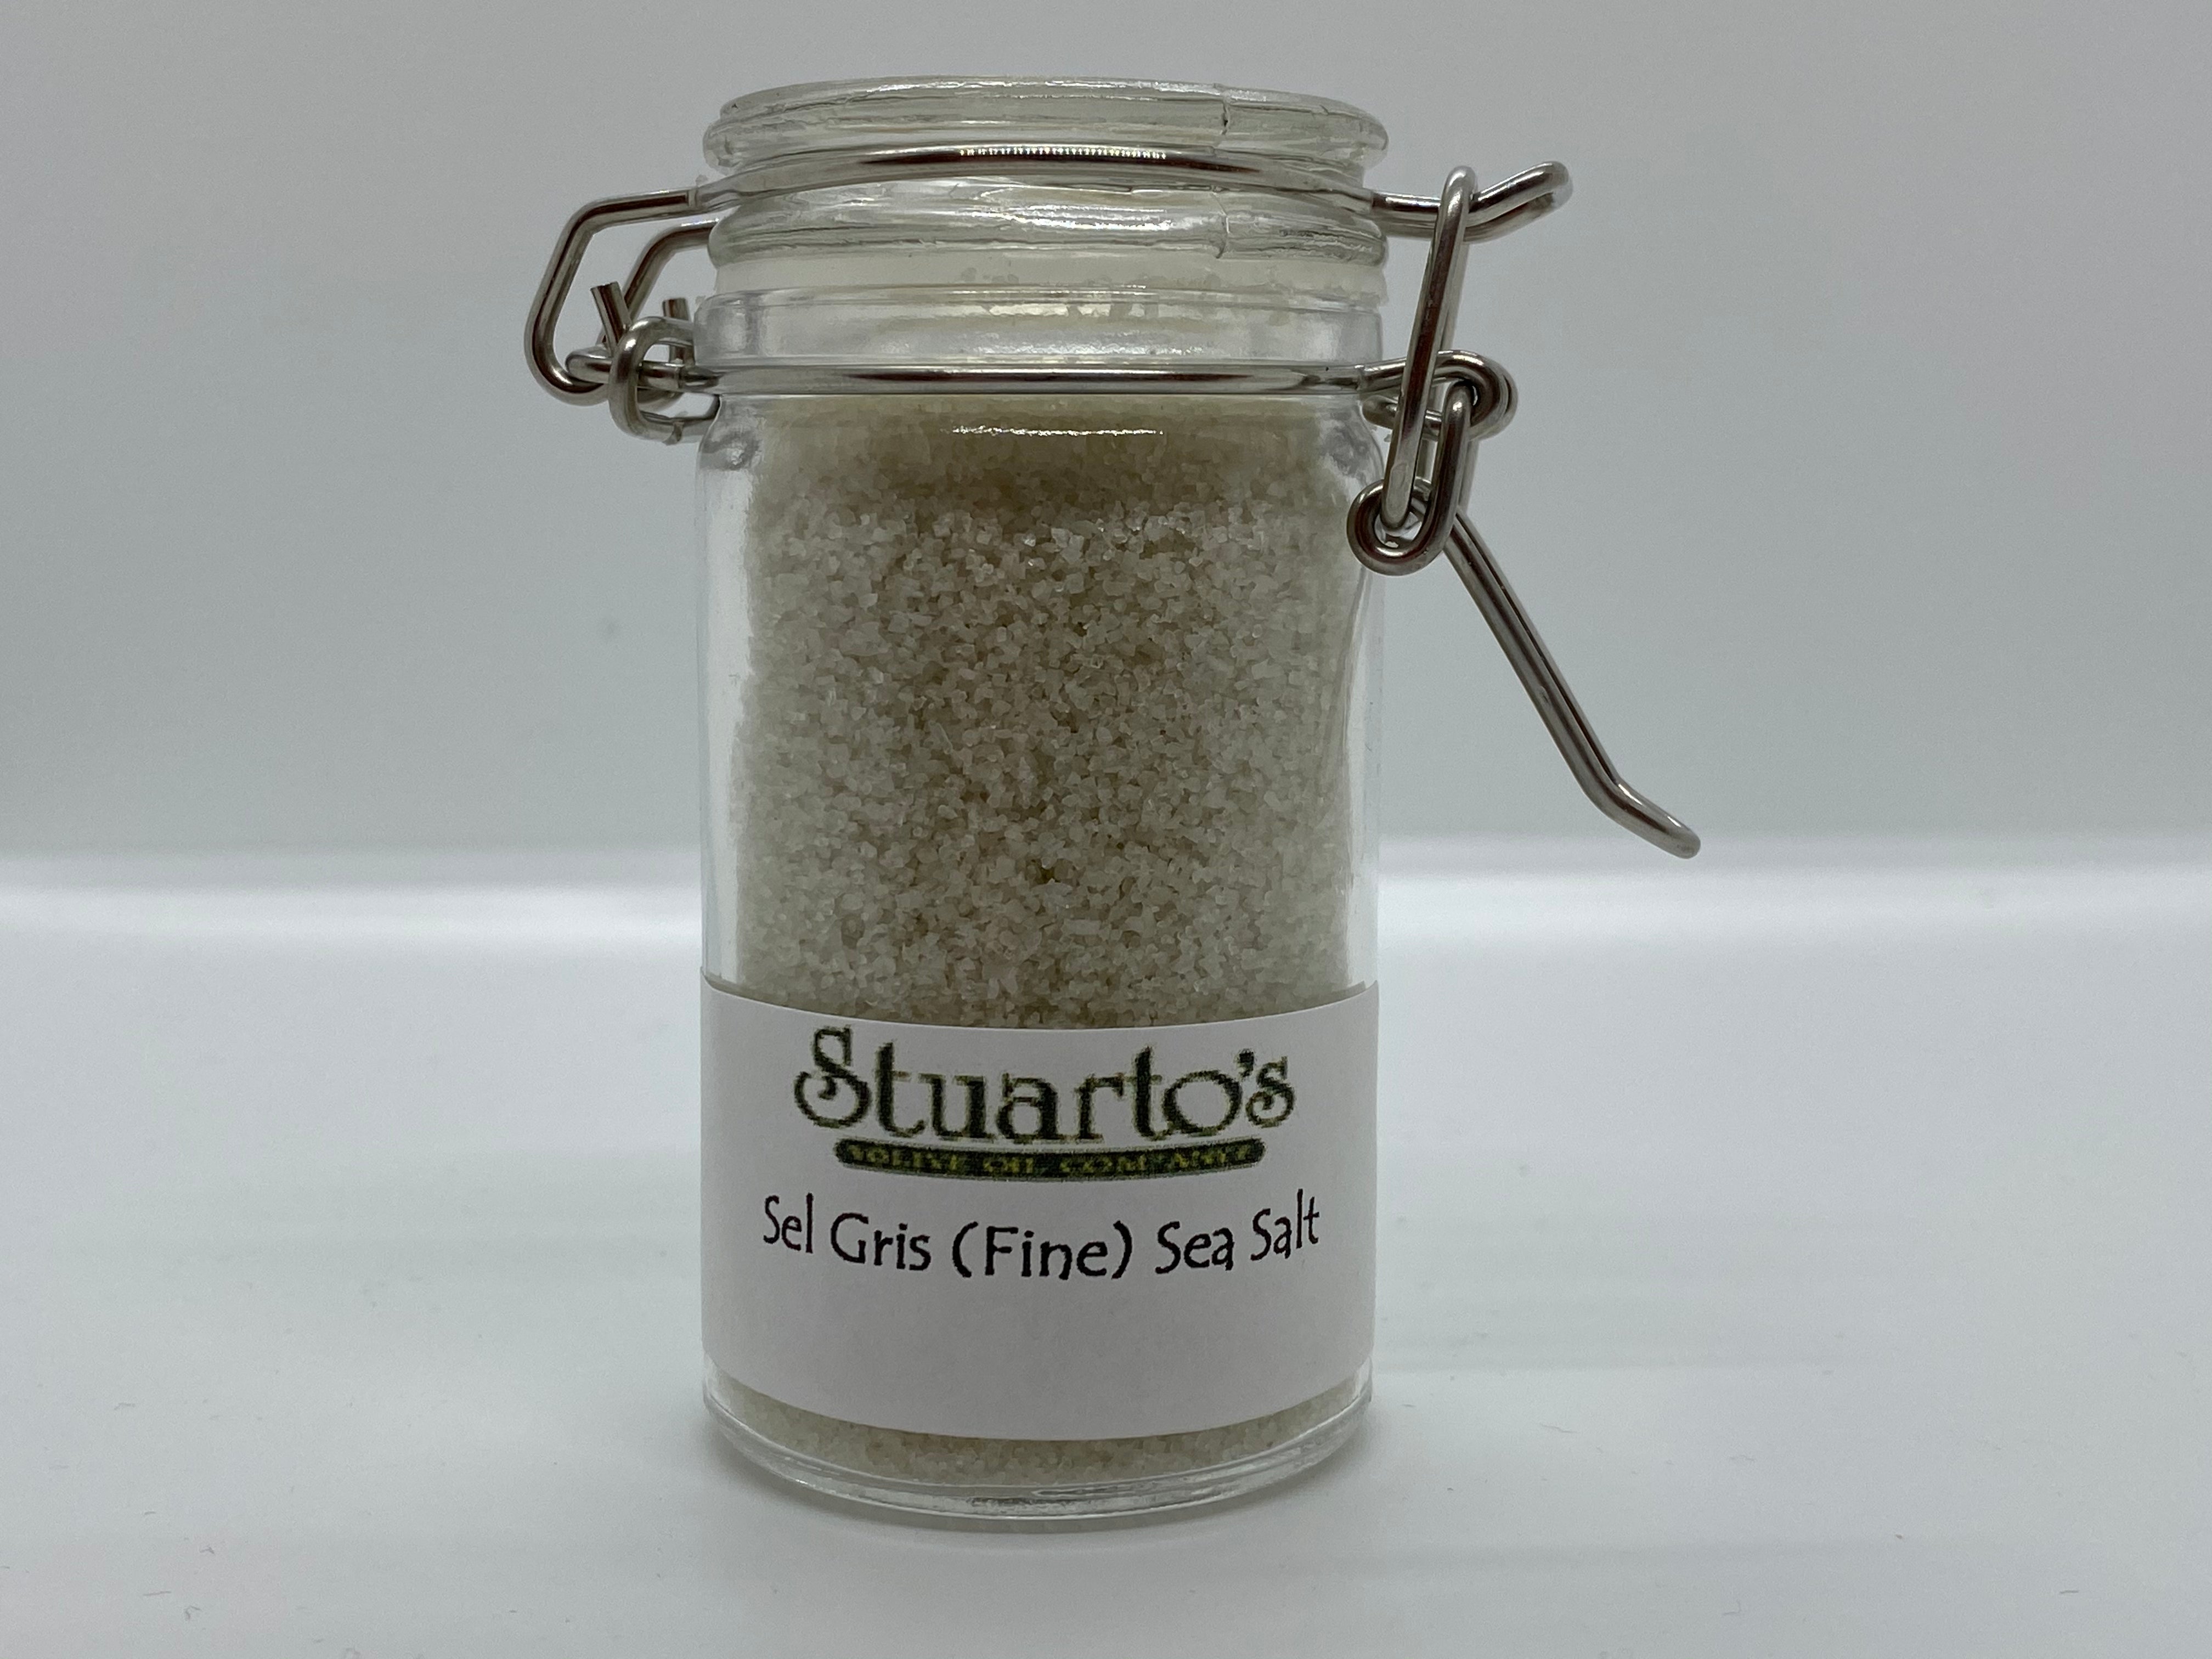 Fleur de Sel de Guerande, French Sea Salt